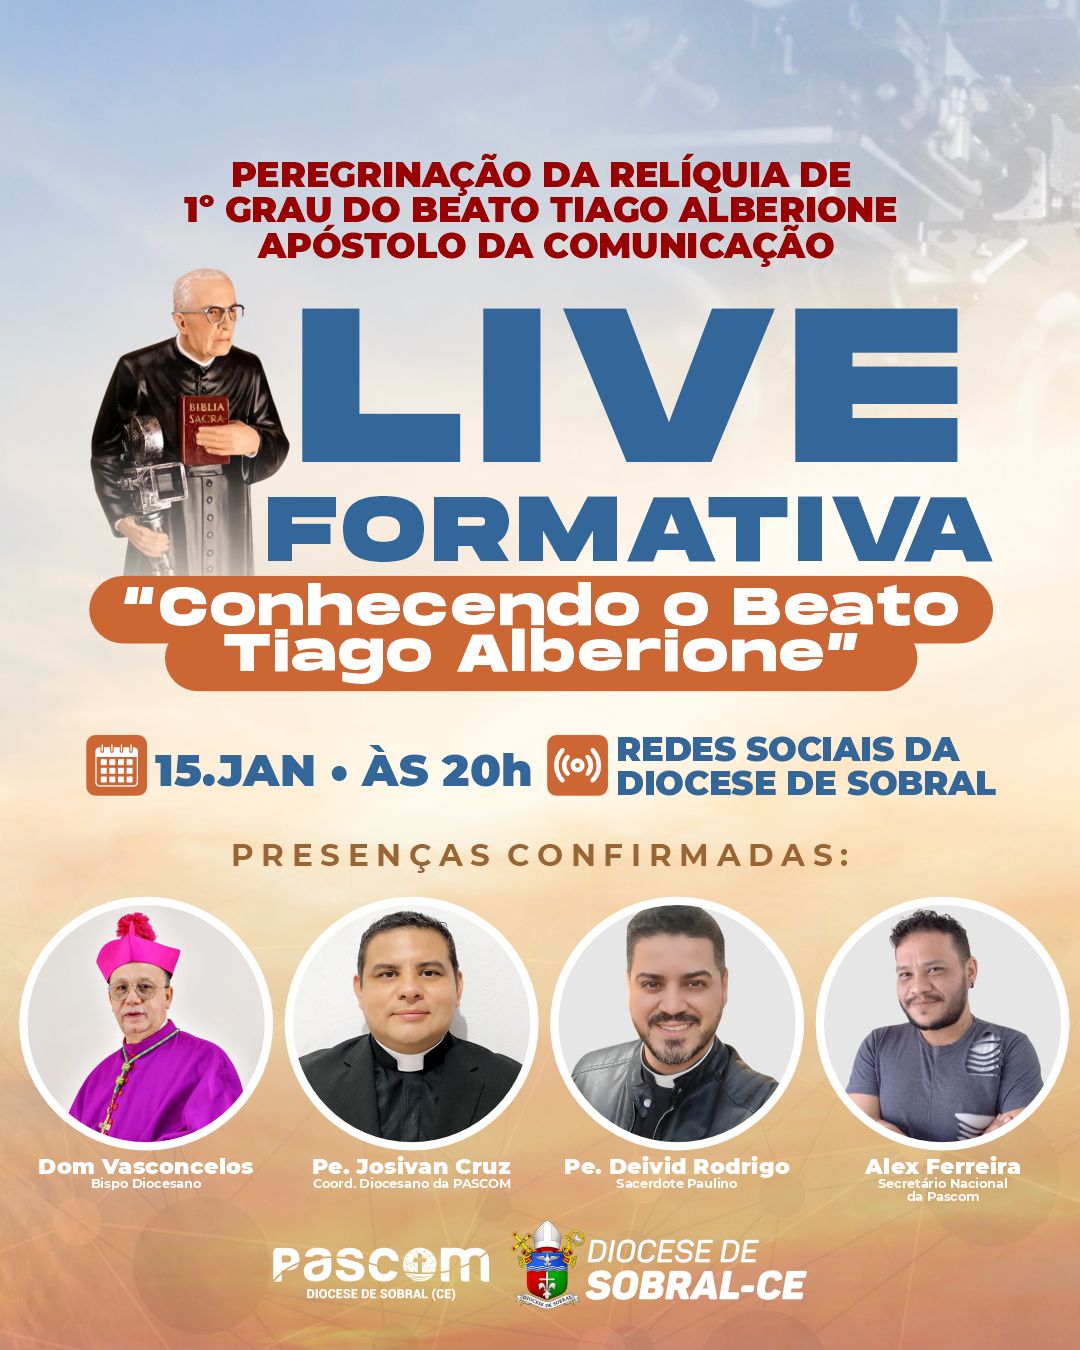 Live formativa sobre o Beato Tiago Alberione. Créditos: Diocese de Sobral